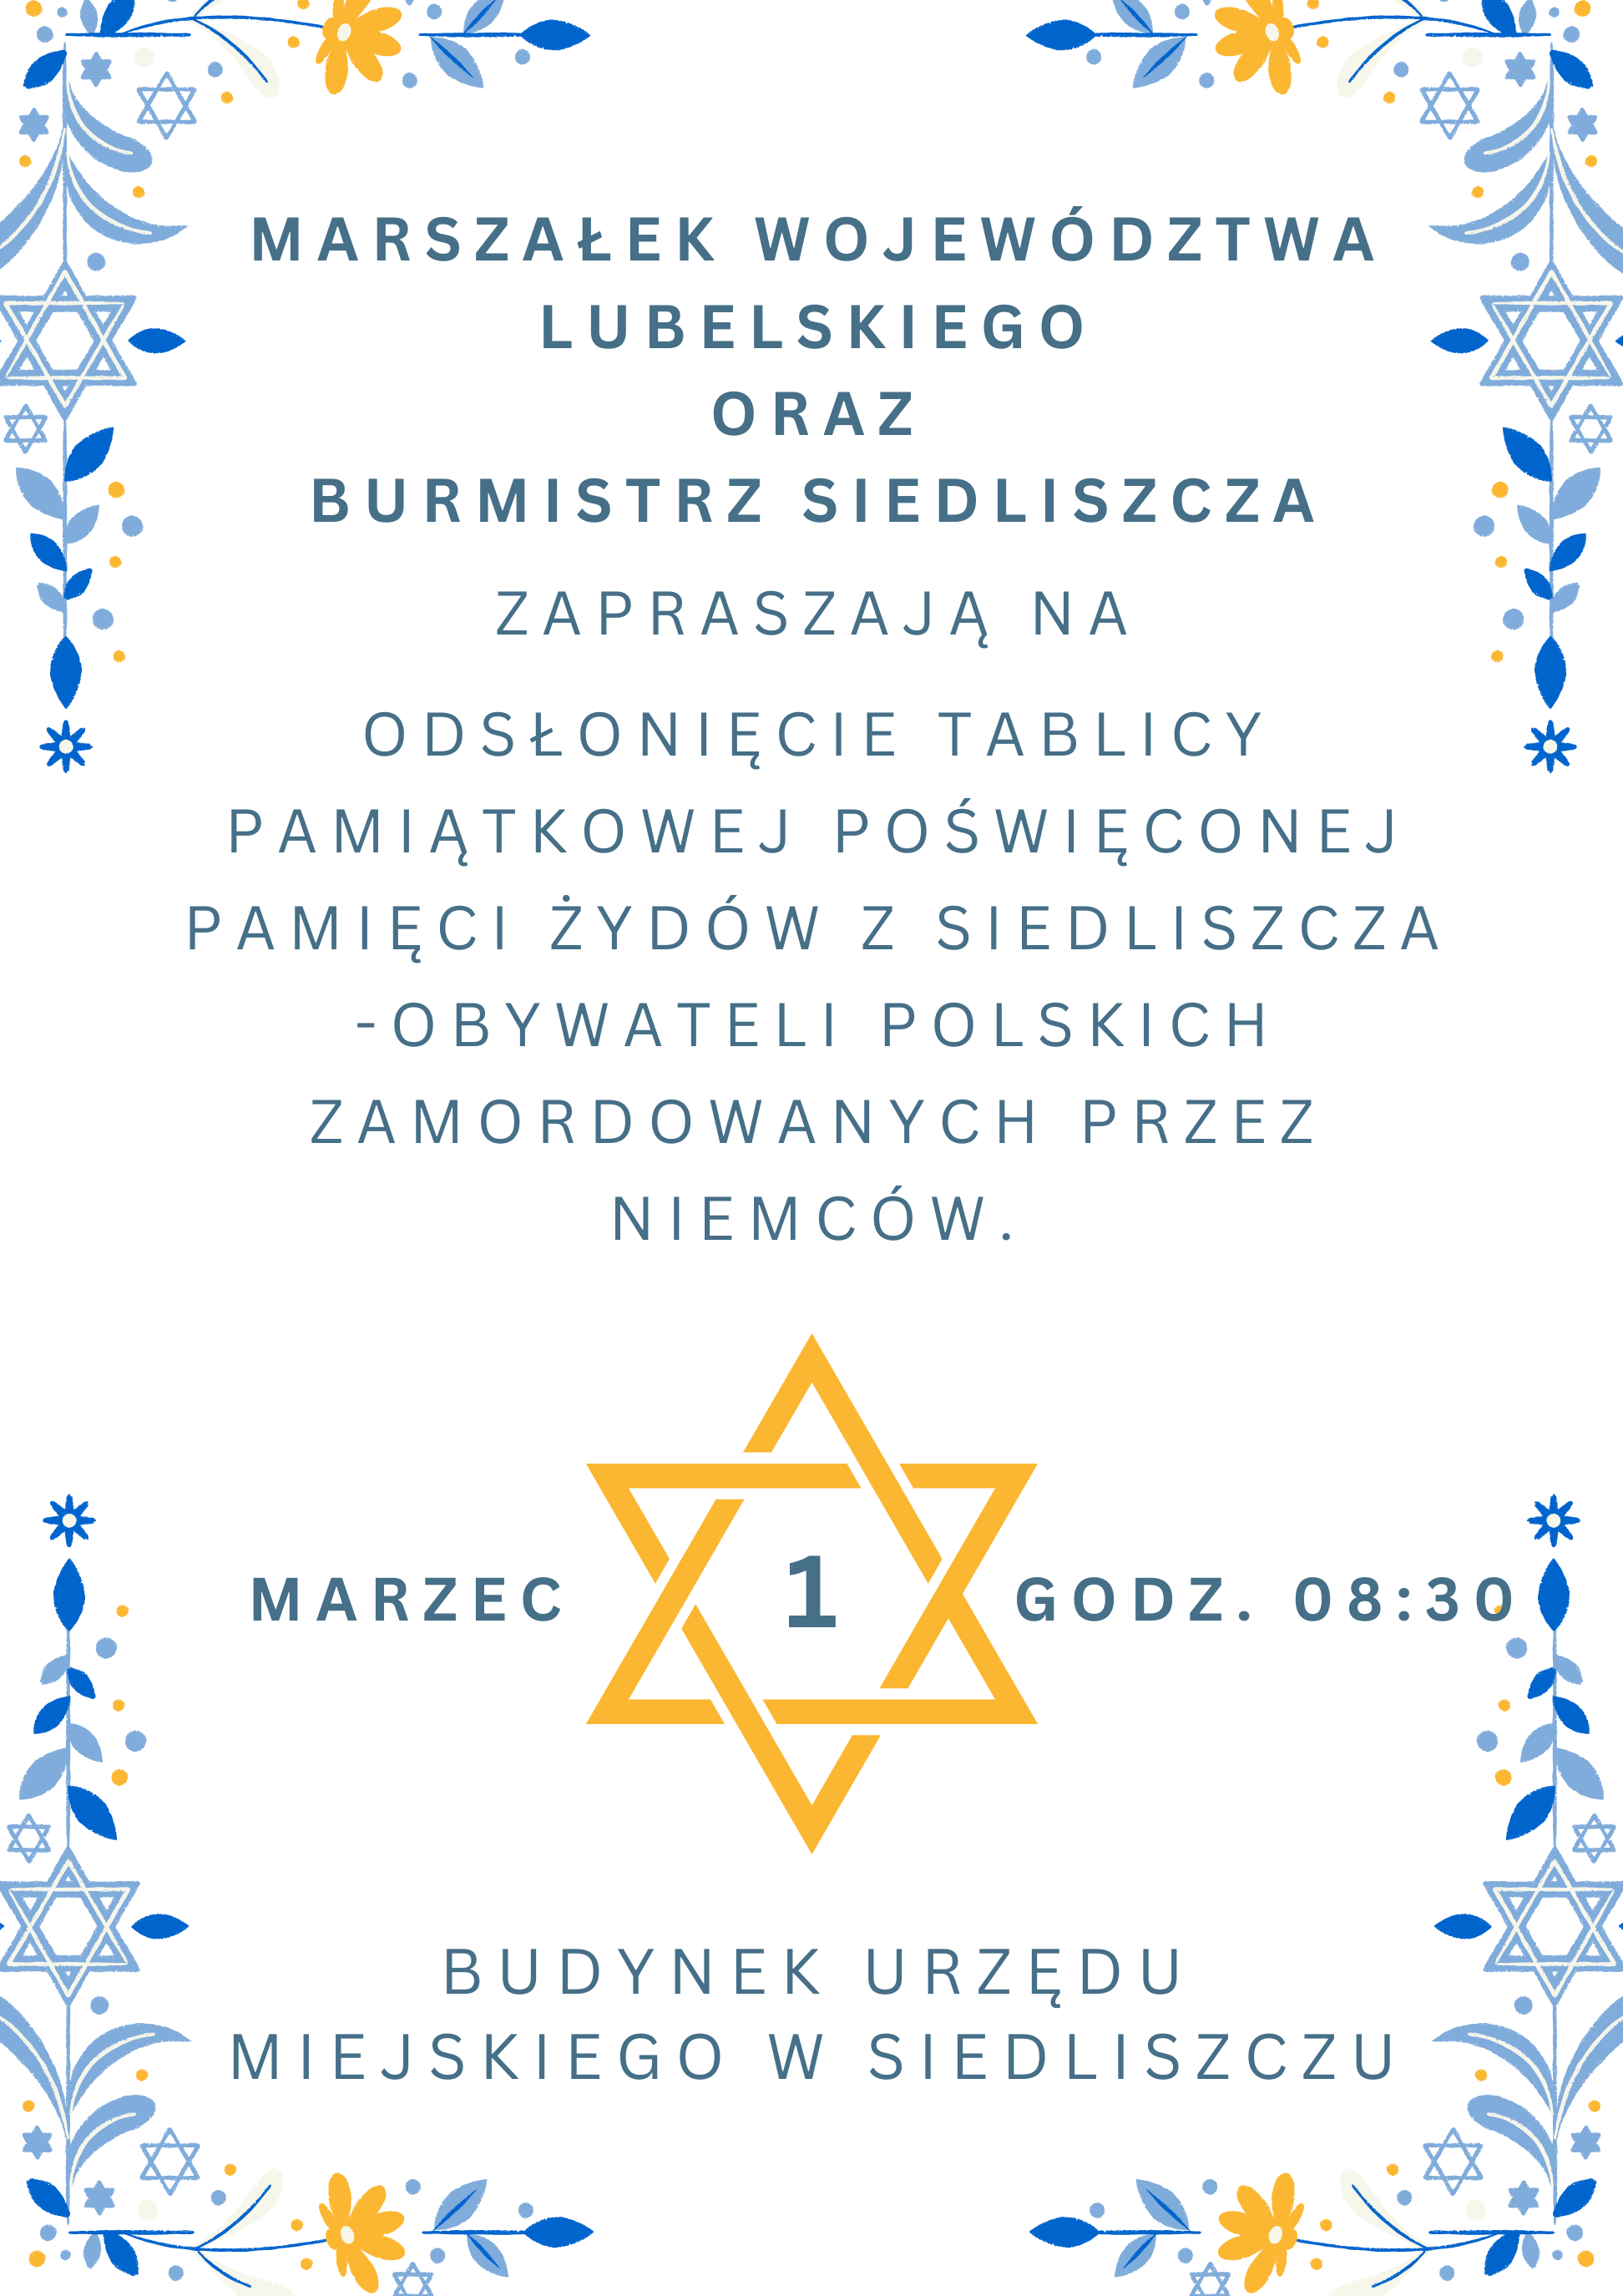 Zaproszenie na odsłonięcie tablicy pamiątkowej poświęconej pamięci Żydów z Siedliszcza